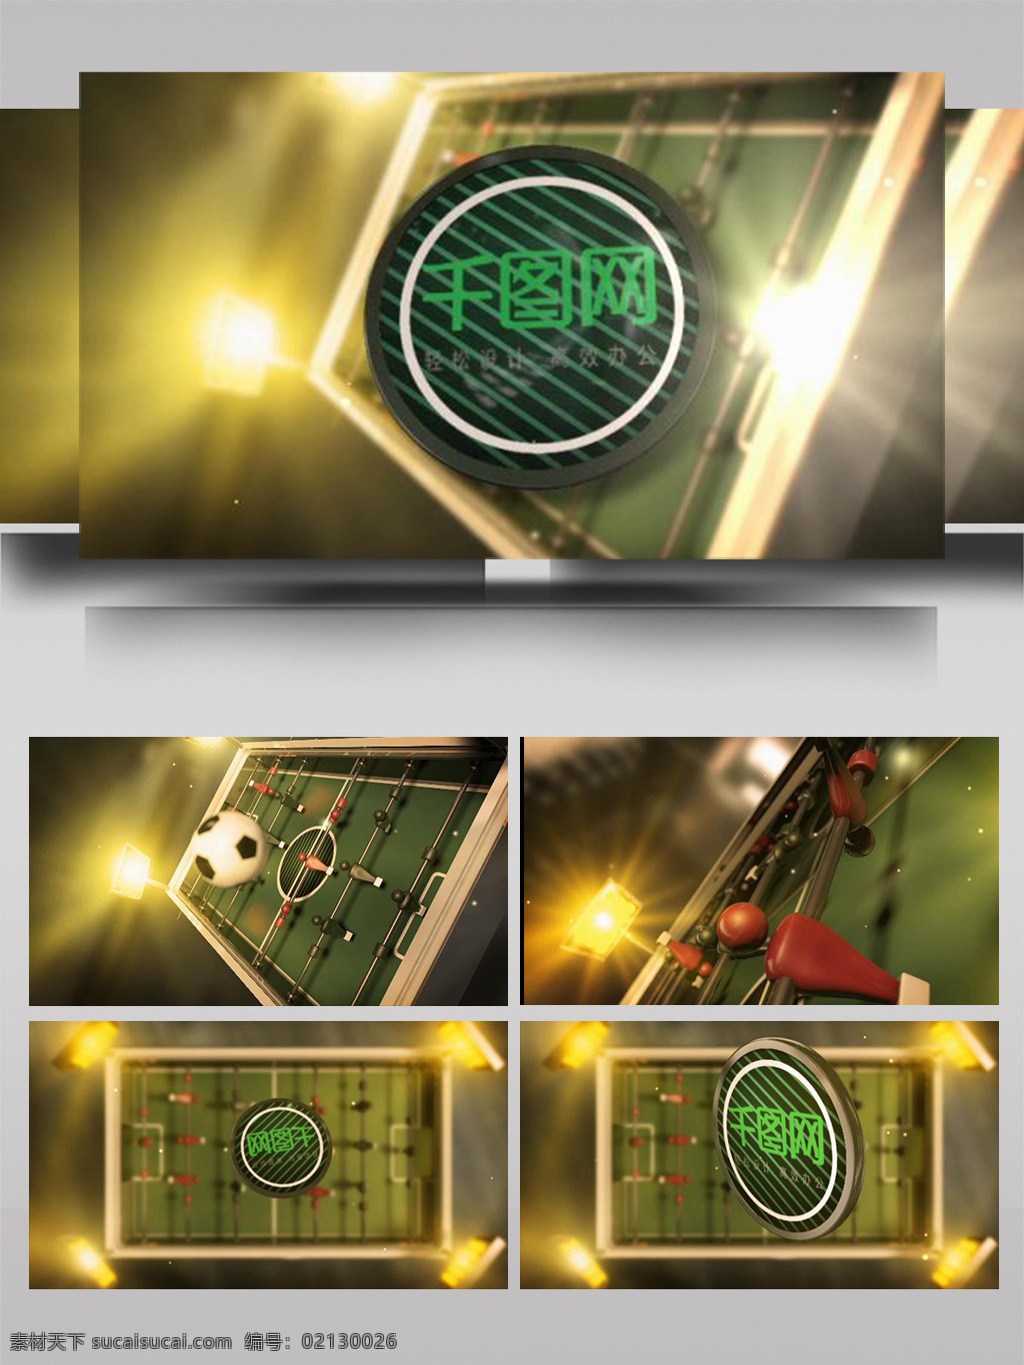 金色 大气 足球 桌 台 动画 标志 ae 模板 3d 字体 翻腾 旋转 运动场 高端 组合 光影 动态 展示 片头 转场 过度